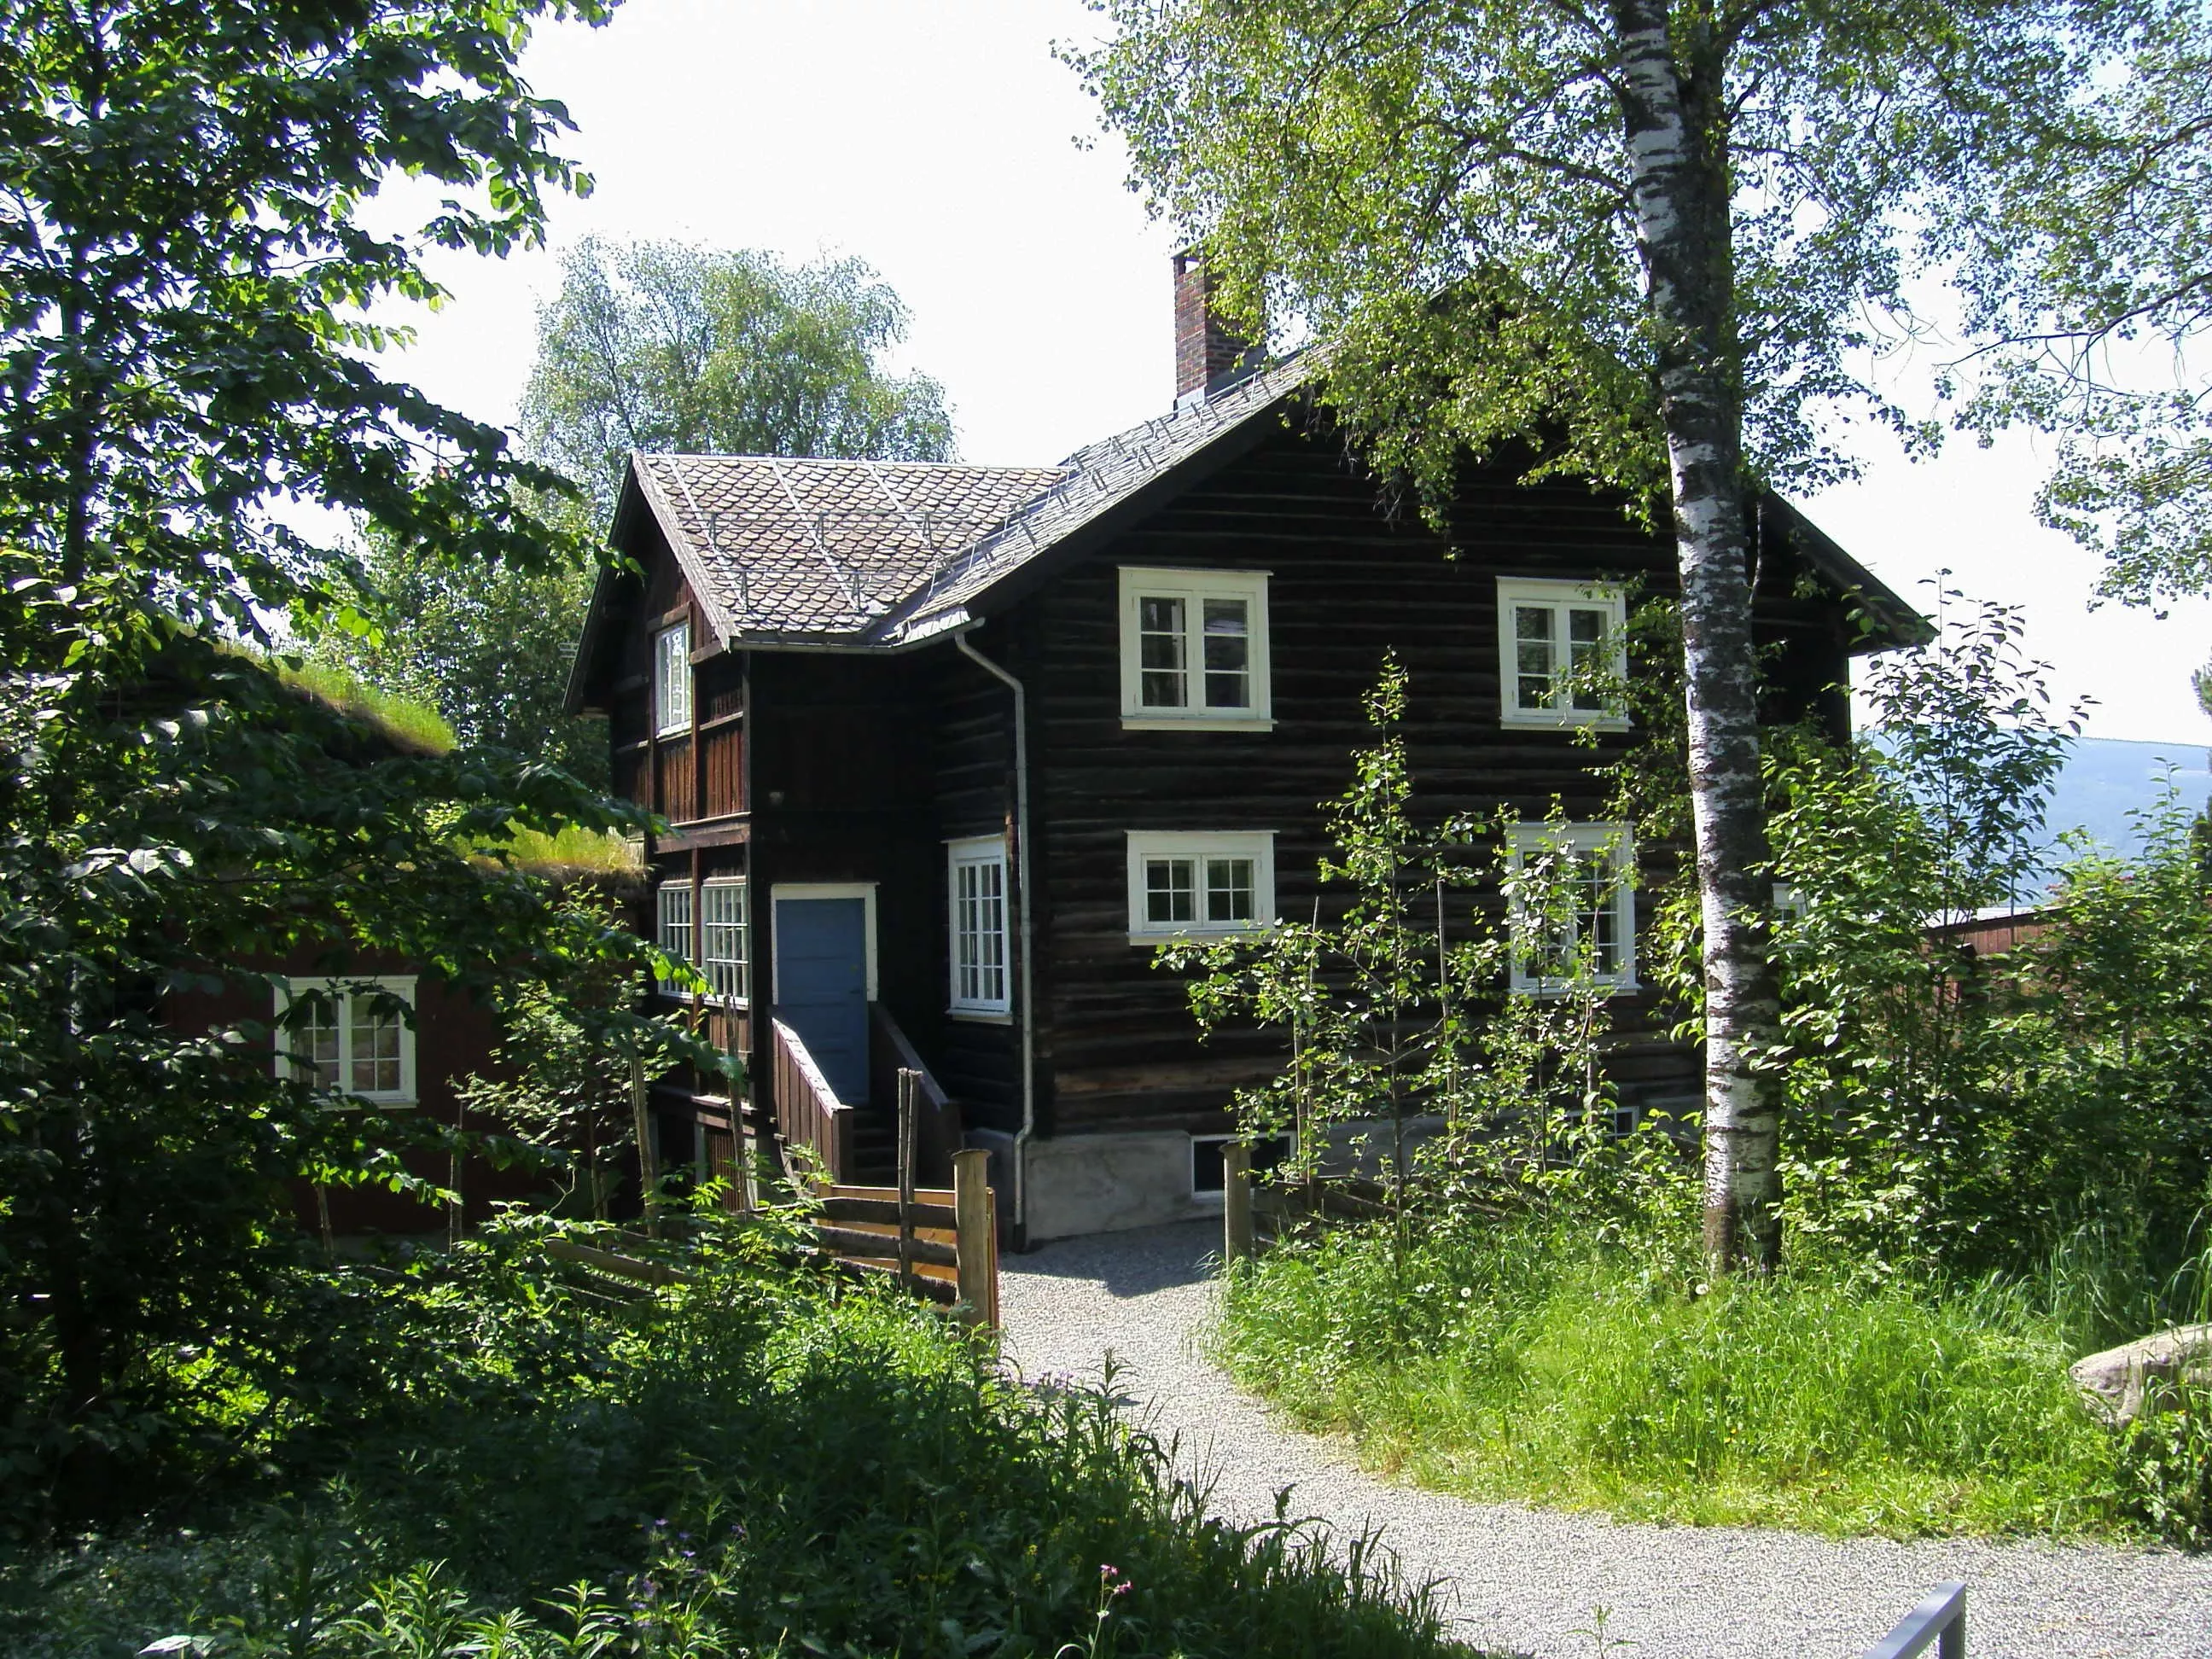 Sigrid Undset's Home Bjerkebaek in Norway, Europe | Museums - Rated 0.7